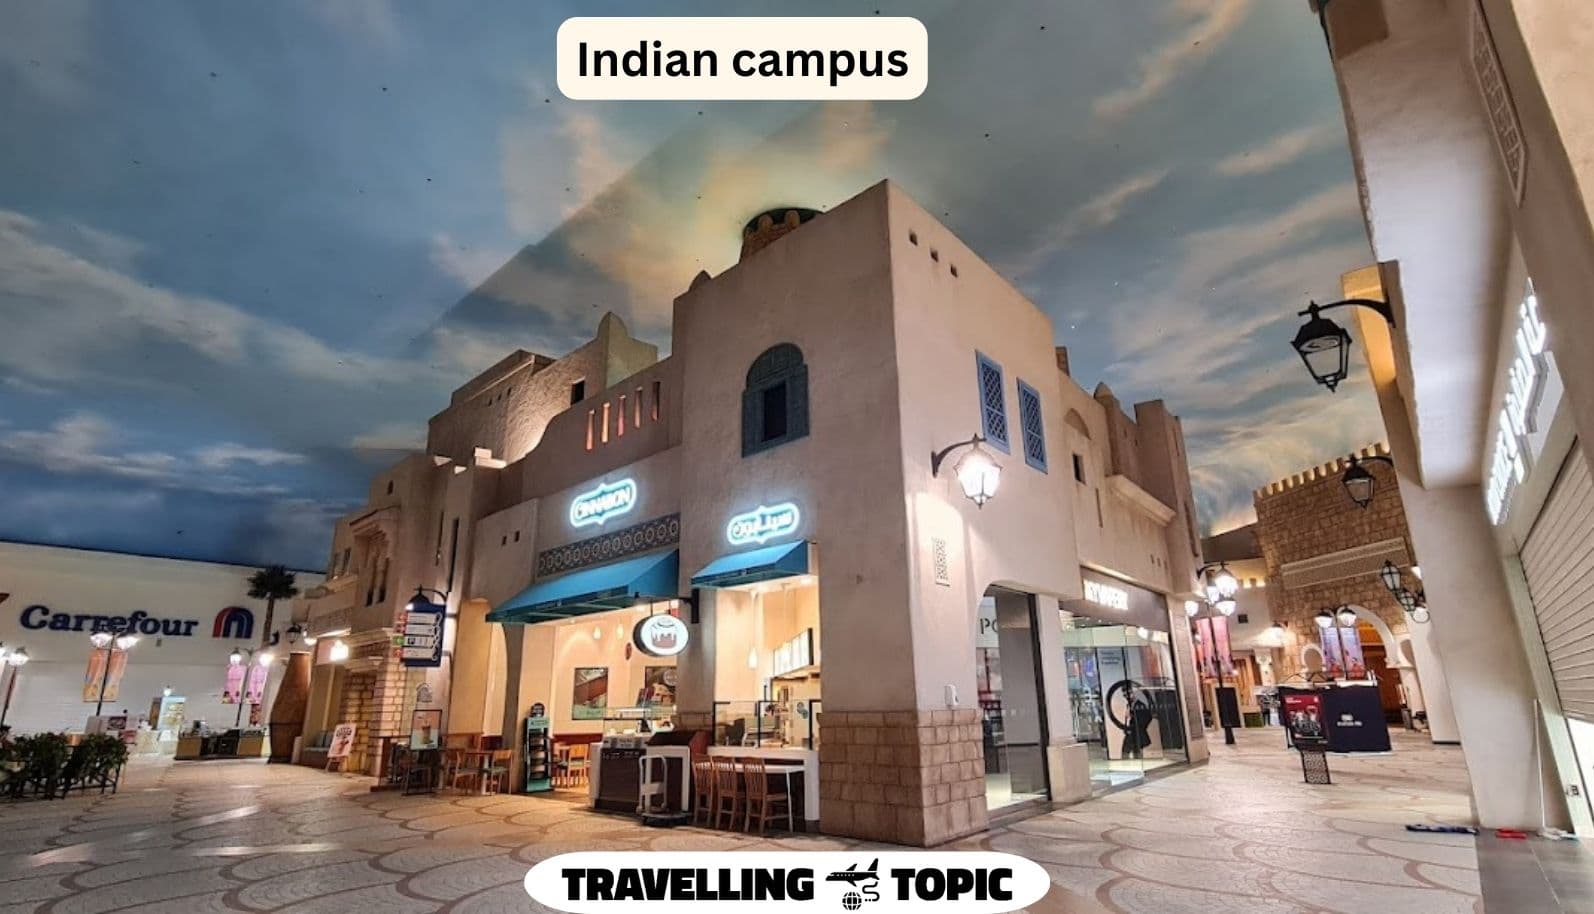 Indian campus